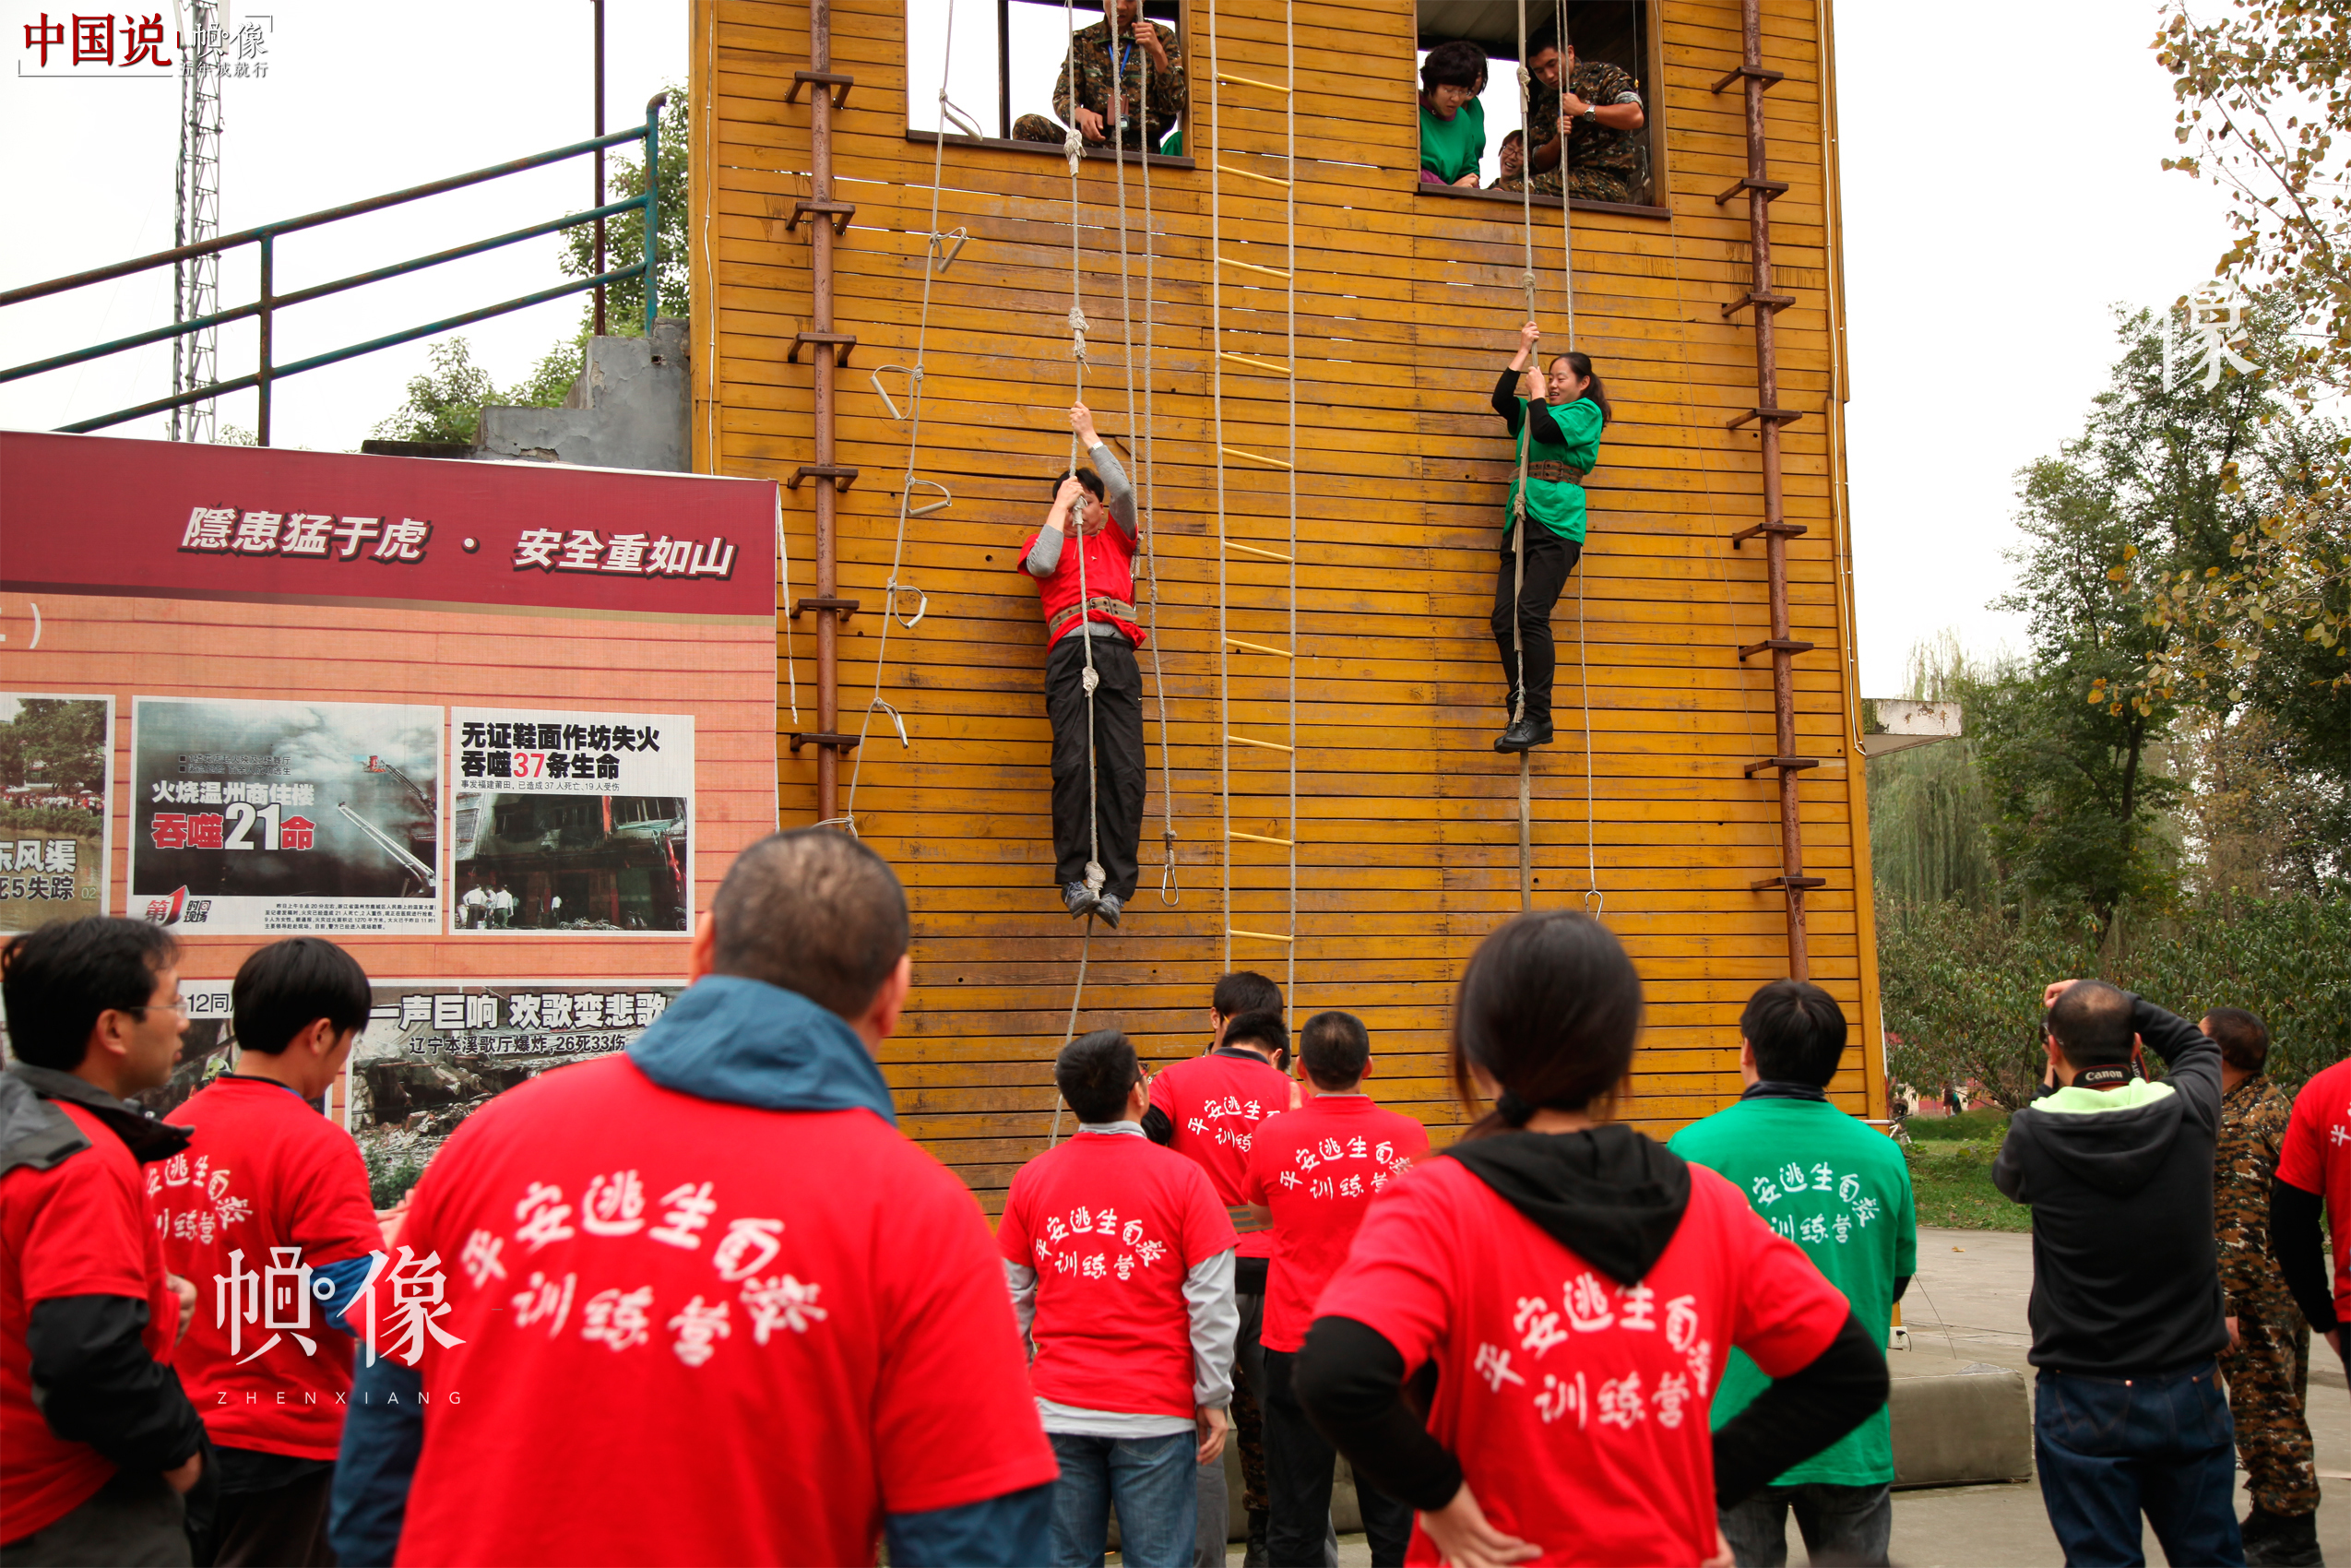 安全体验教室受捐学校的安全课老师参加高空降落安全应急技能培训。 中国儿童少年基金会供图